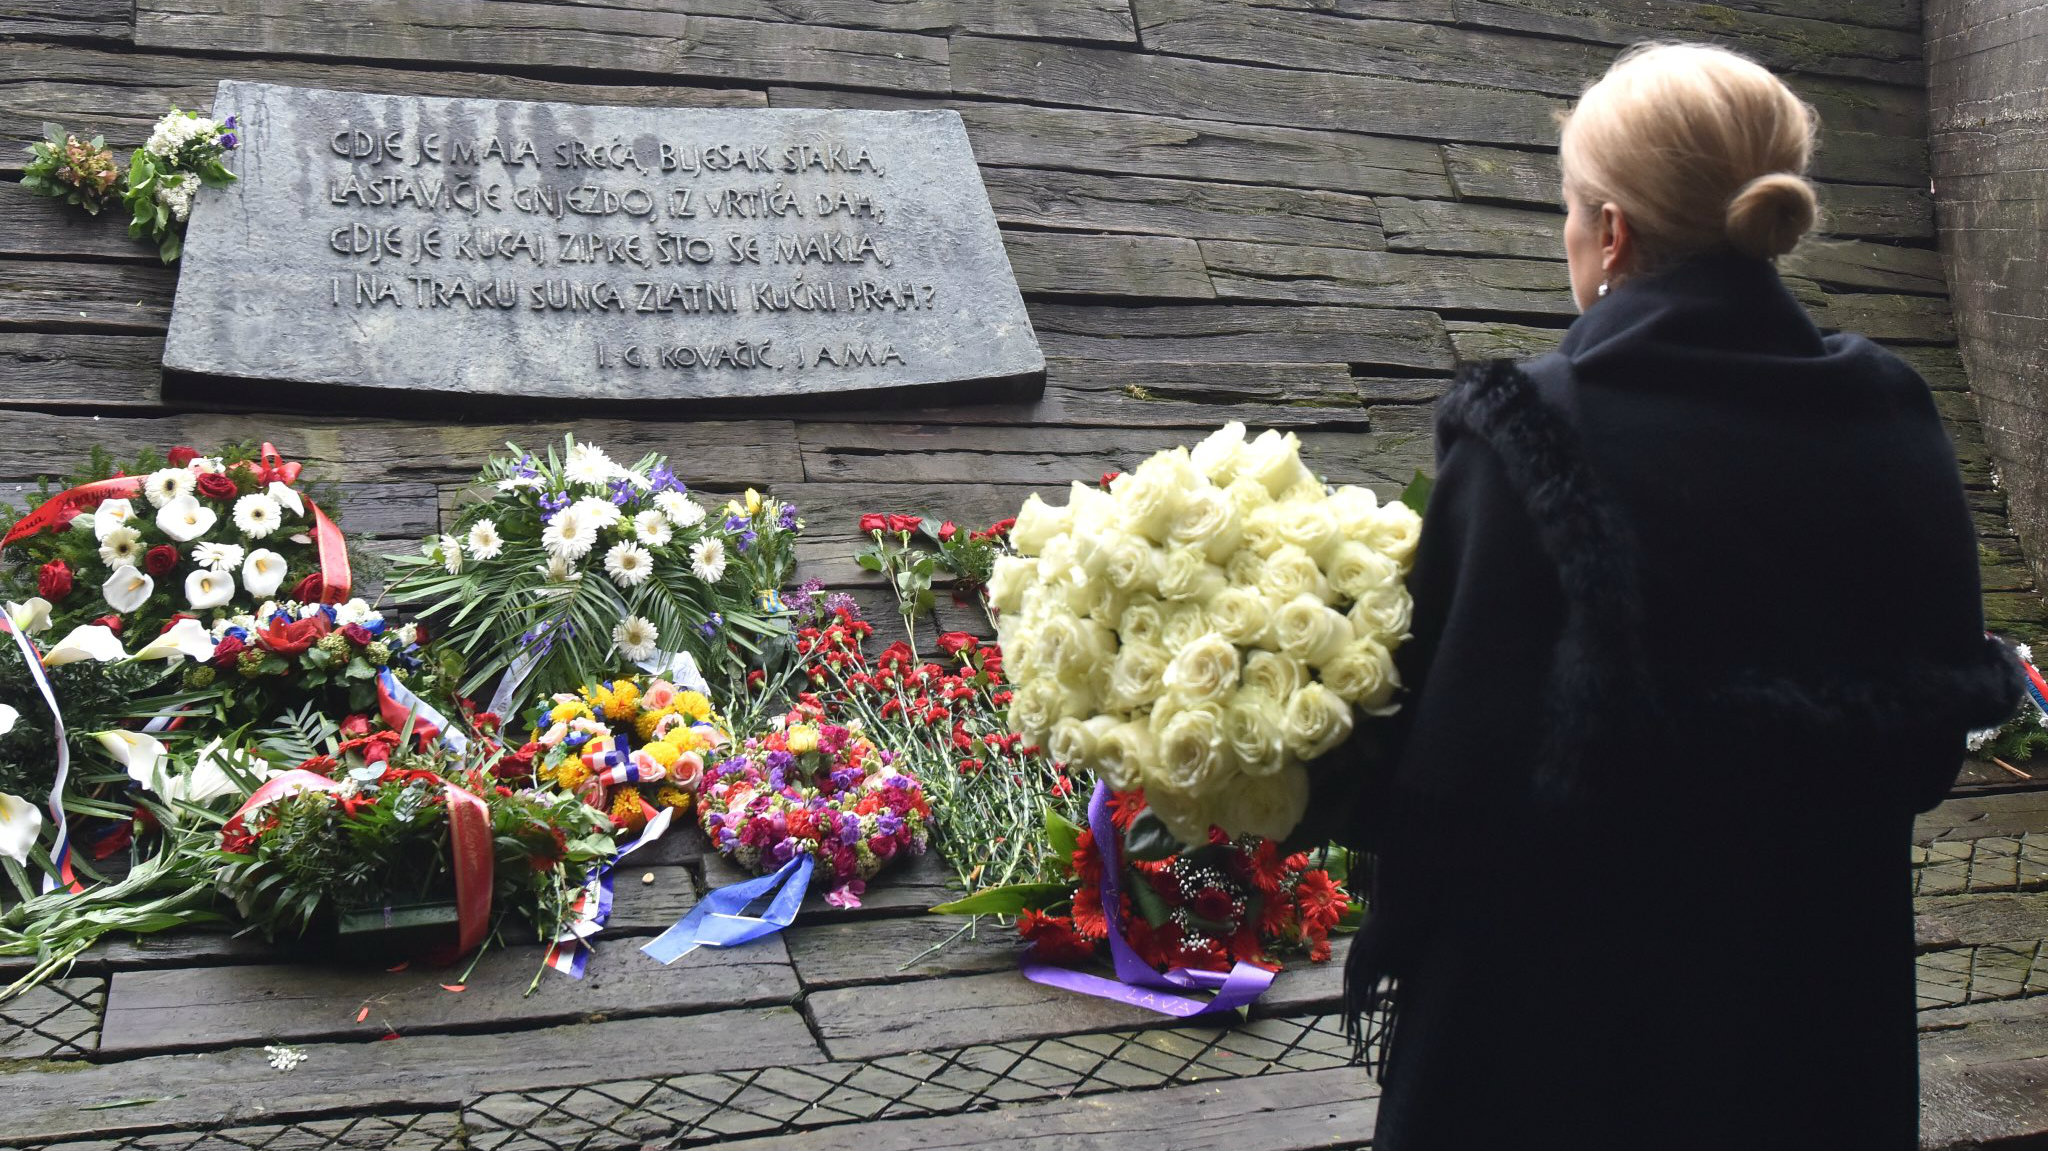 Linta: Dolazak hrvatskih vlasti u Jasenovac ruganje žrtvama 1